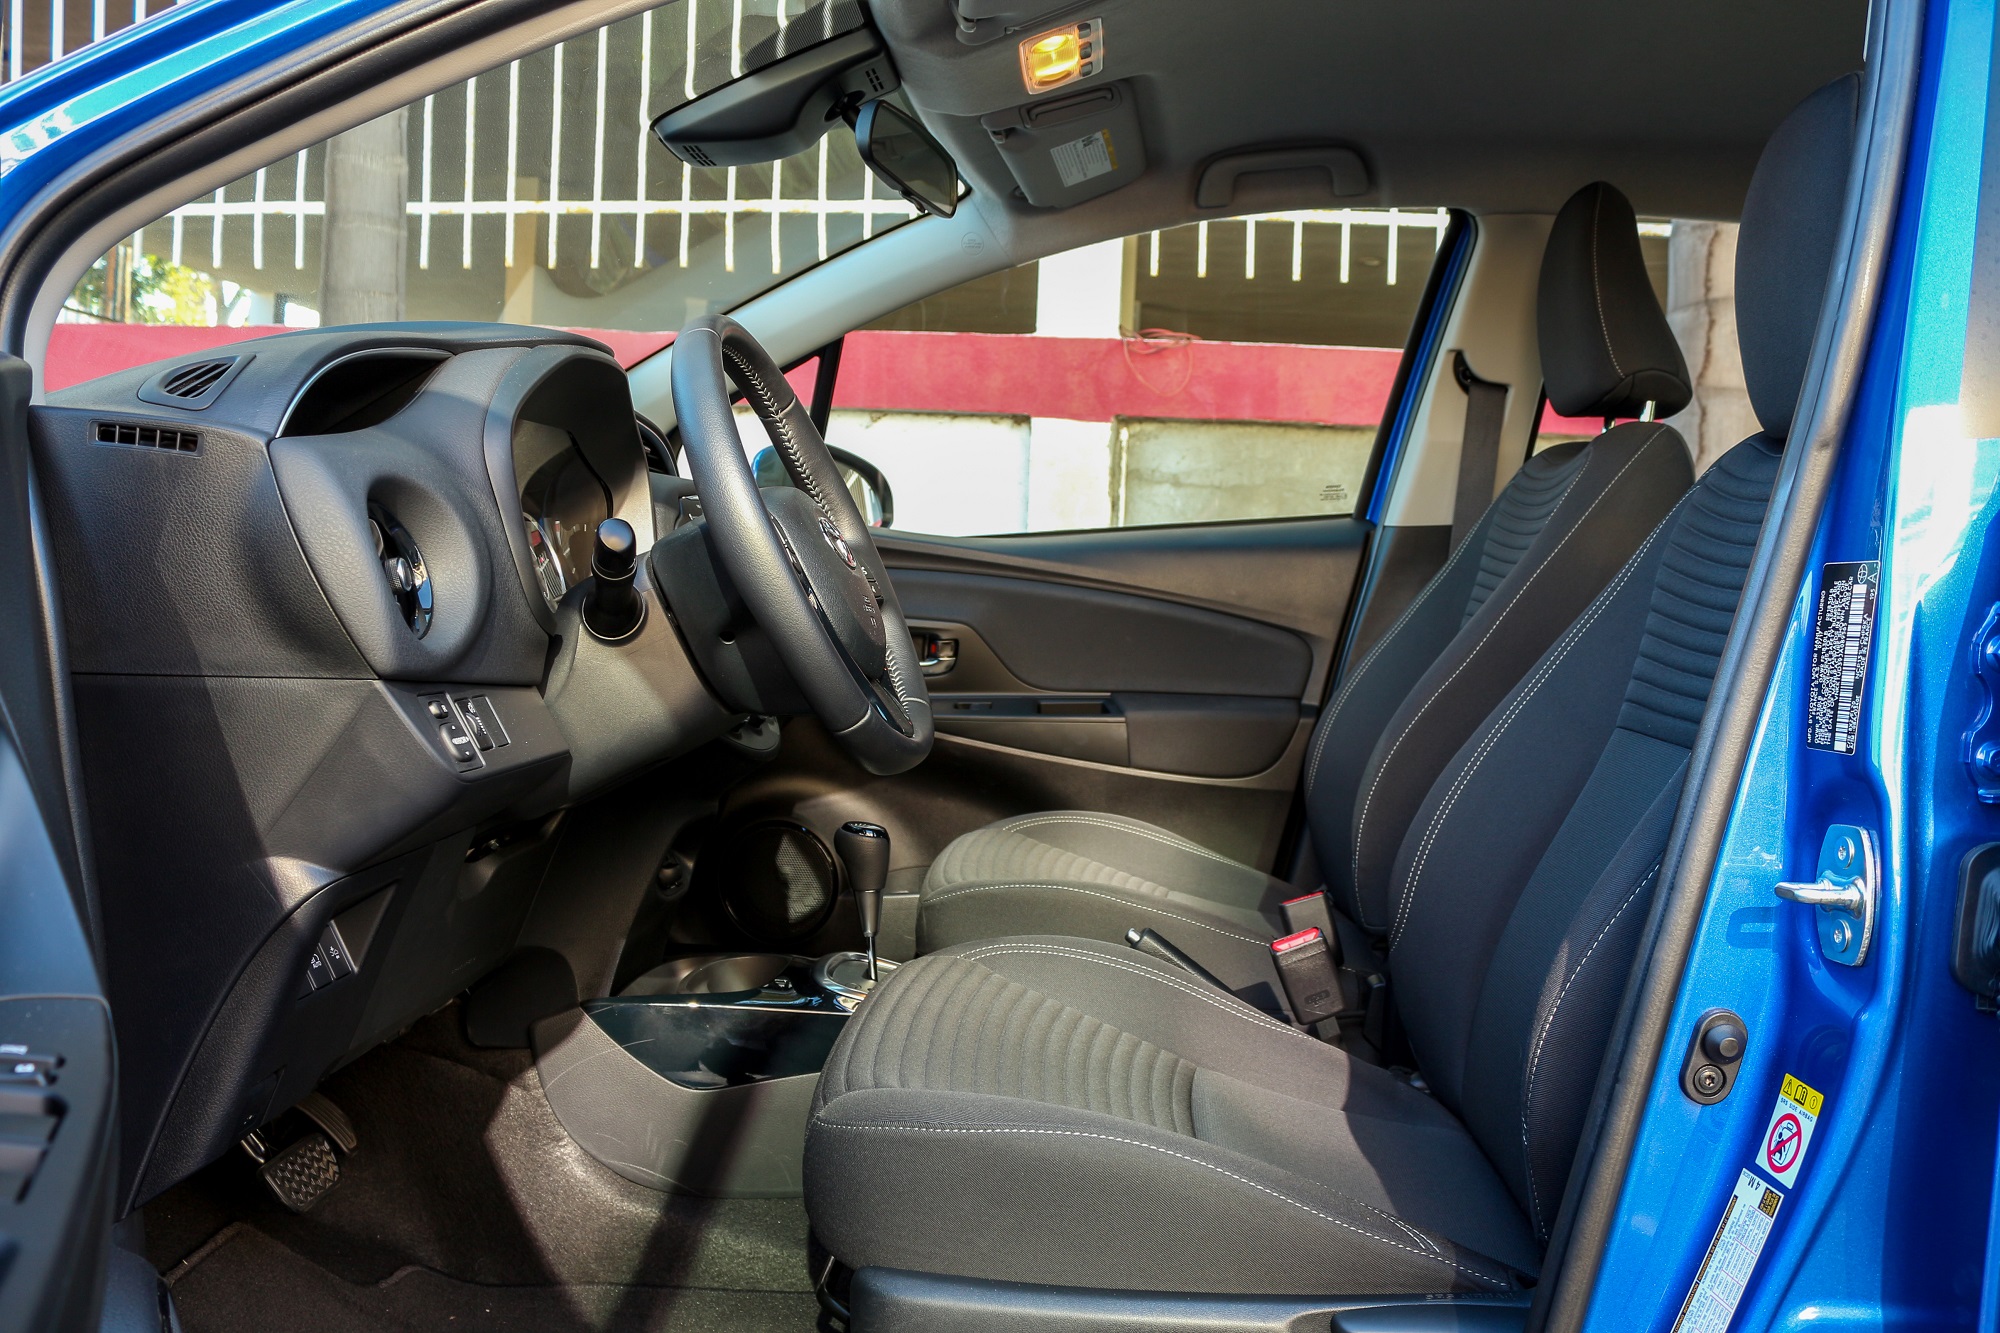 Scionlife.com 2018 Toyota Yaris SE Hatchback Review Test